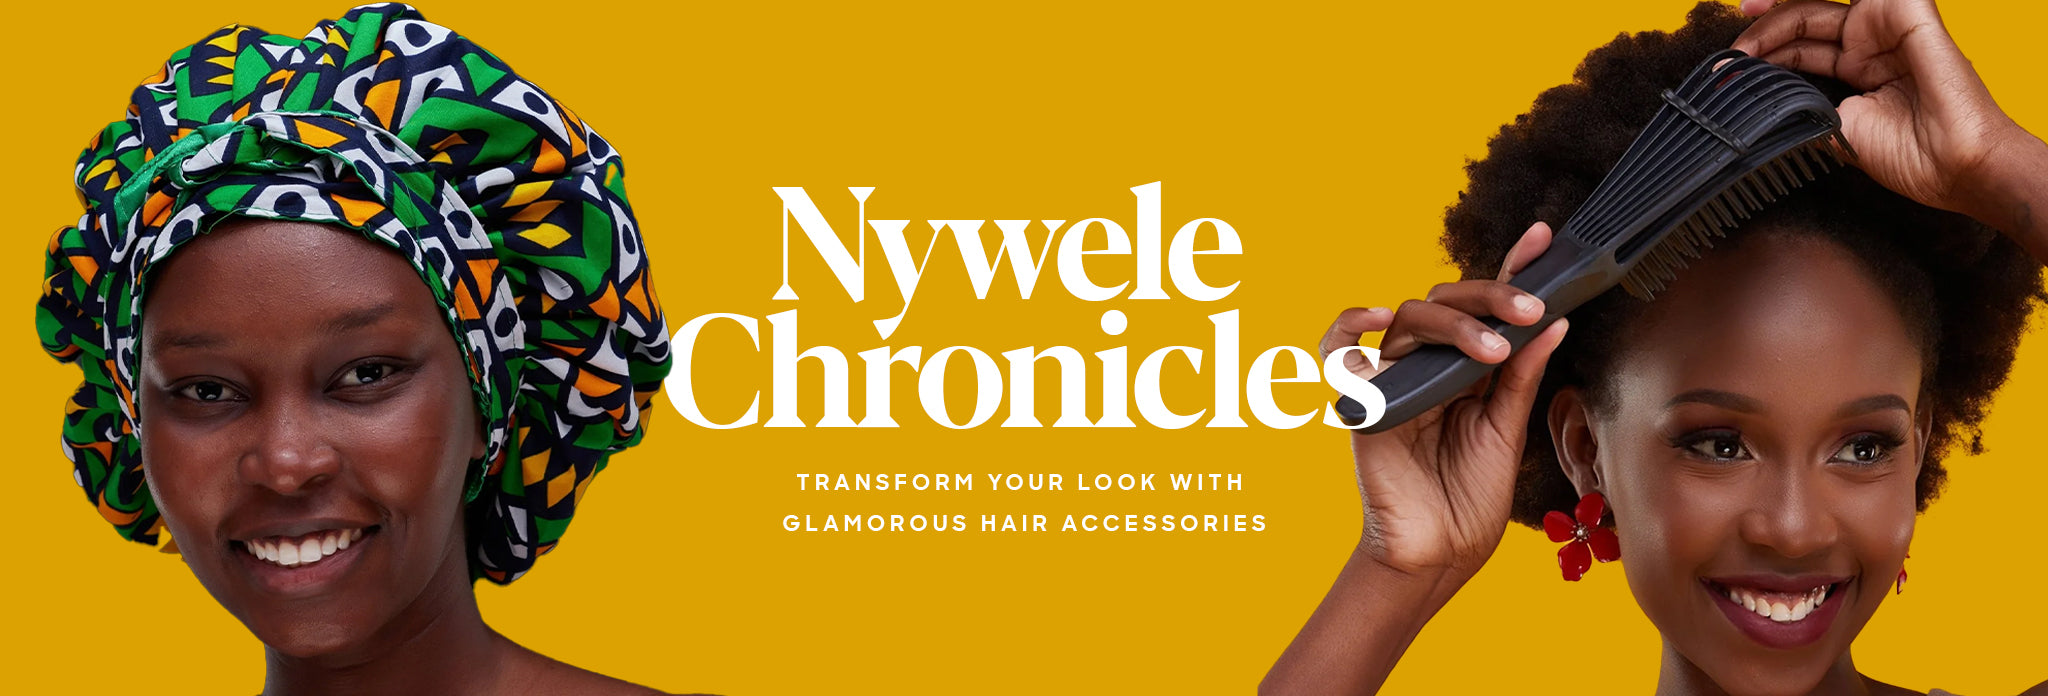 Nywele Chronicles – Shopzetu